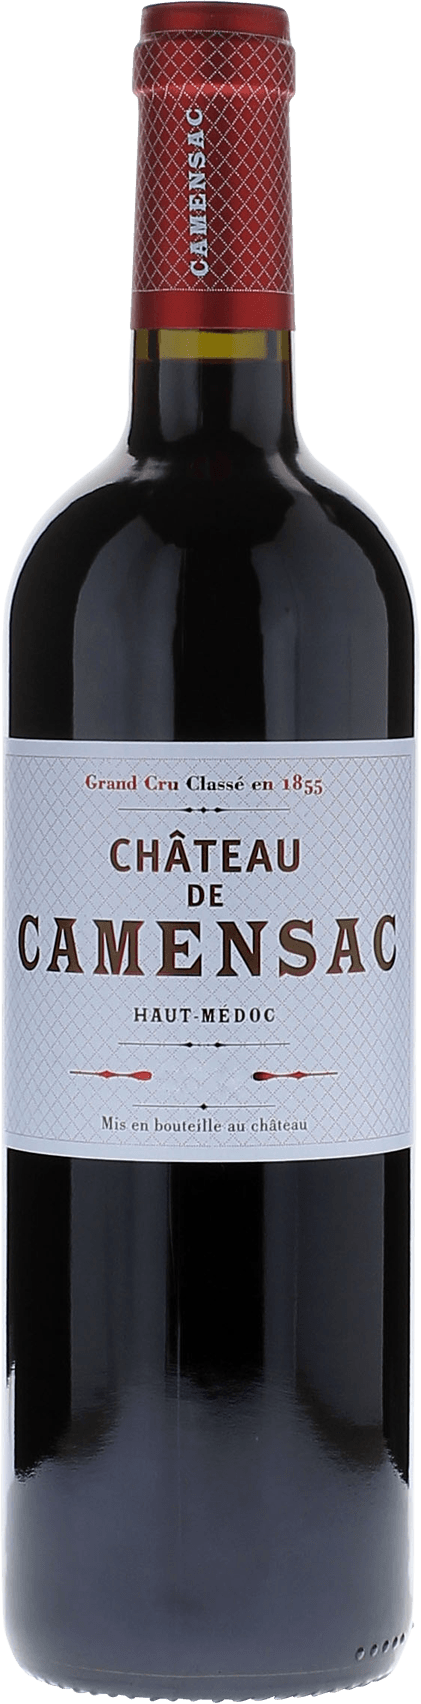 Camensac 2000 5me Grand cru class Mdoc, Bordeaux rouge